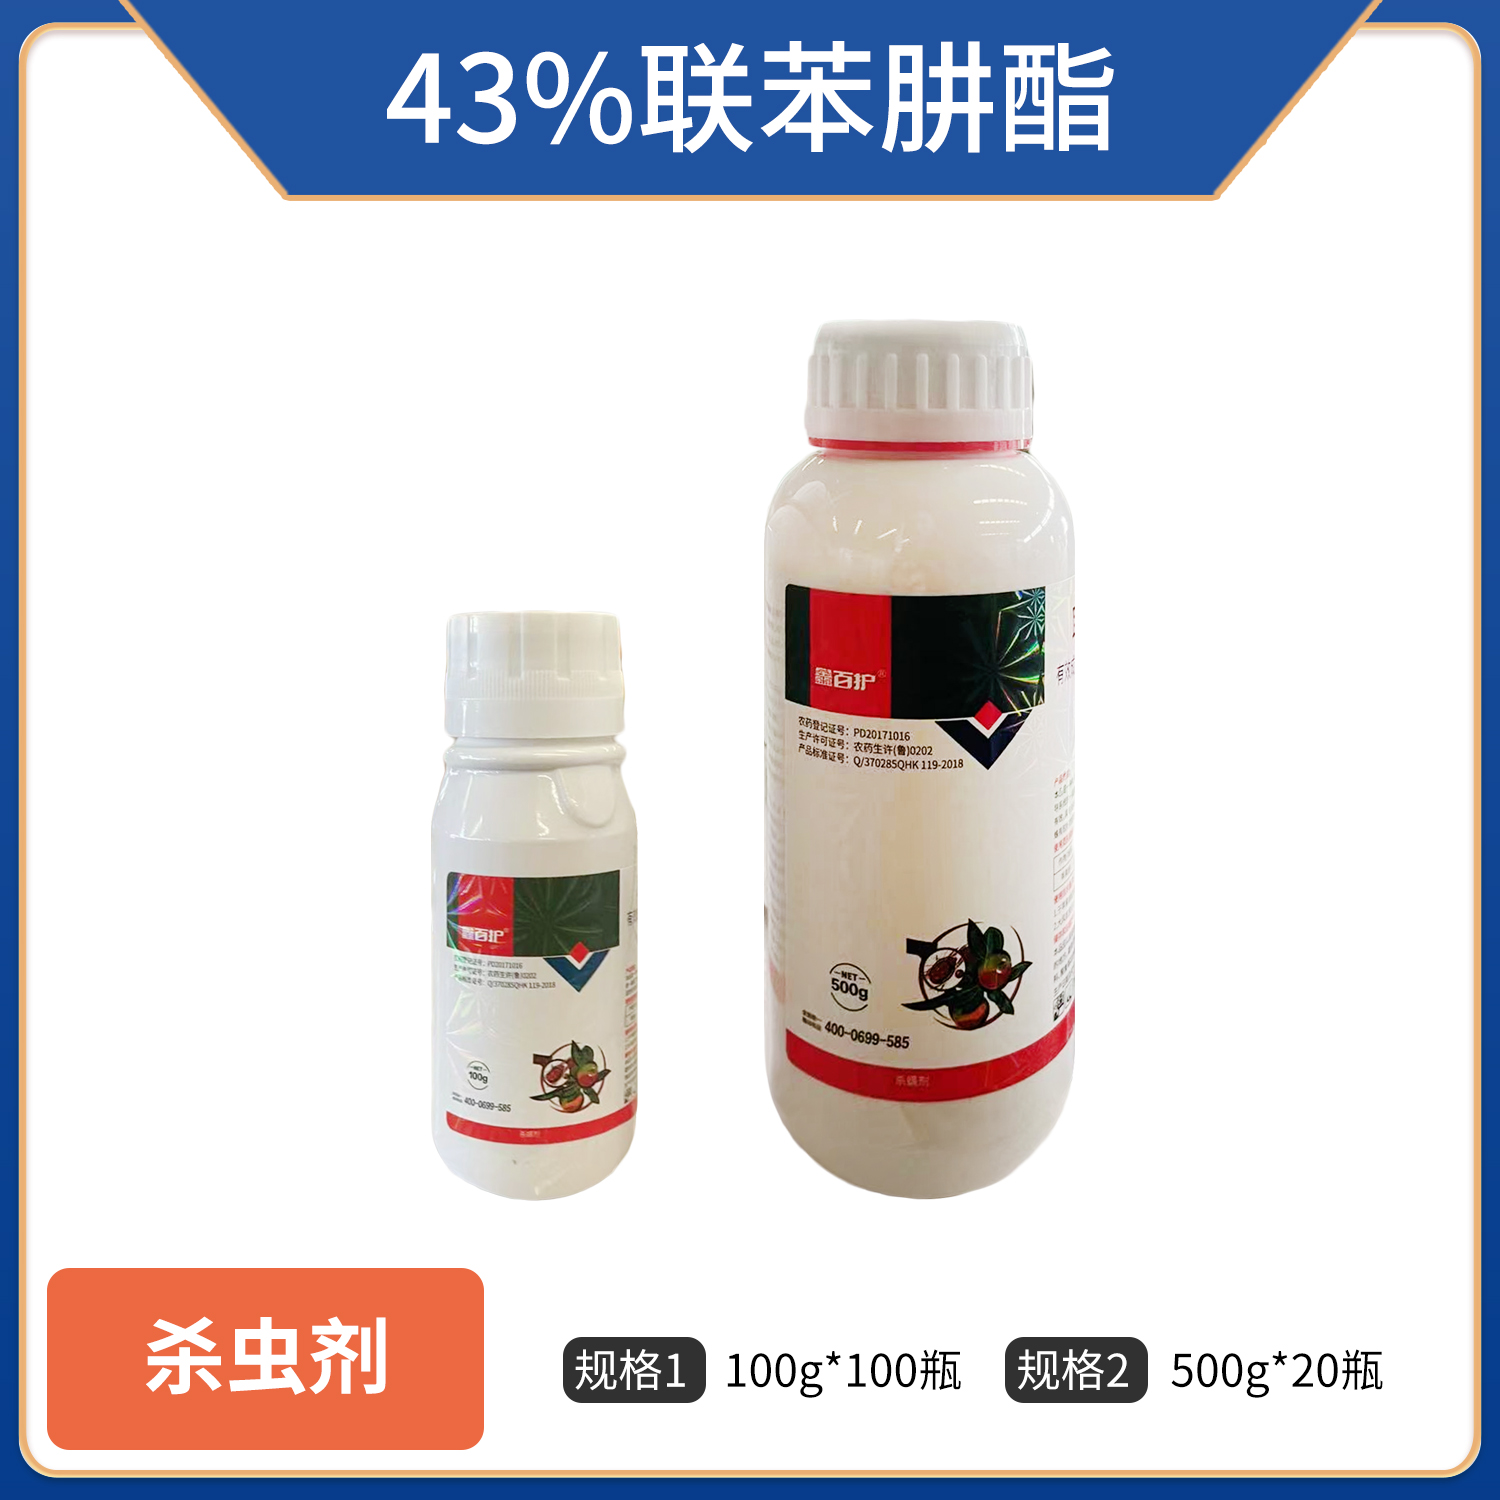 鑫百护-43%联苯肼酯-悬浮剂